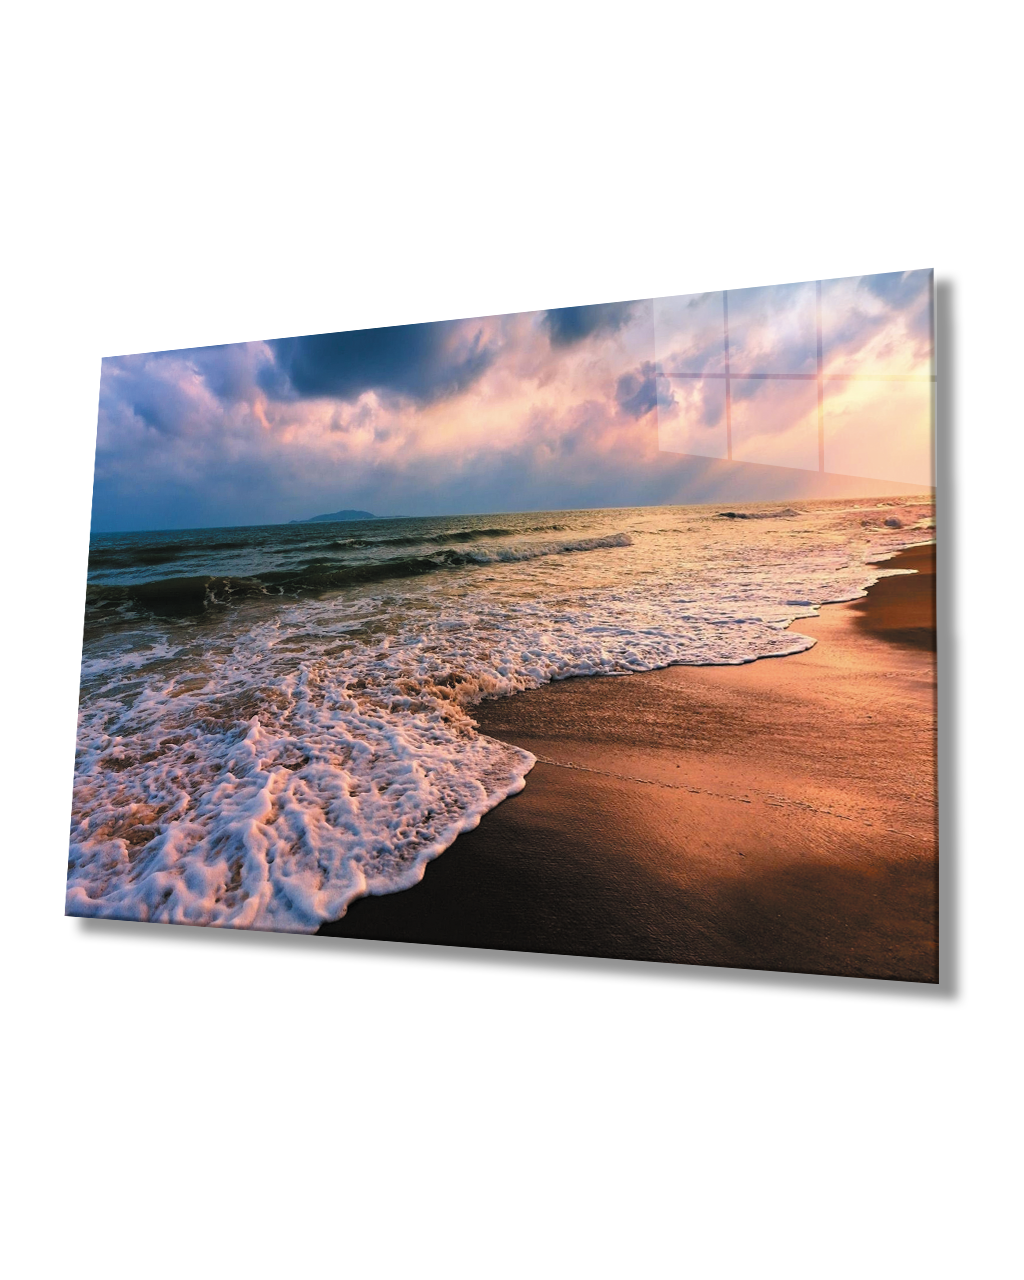 Gün Batımı Deniz Sahil Dalga Manzaralı Cam Tablo  4mm Dayanıklı Temperli Cam Sunset Sea Beach Wave View Glass Table 4mm Durable Tempered Glass